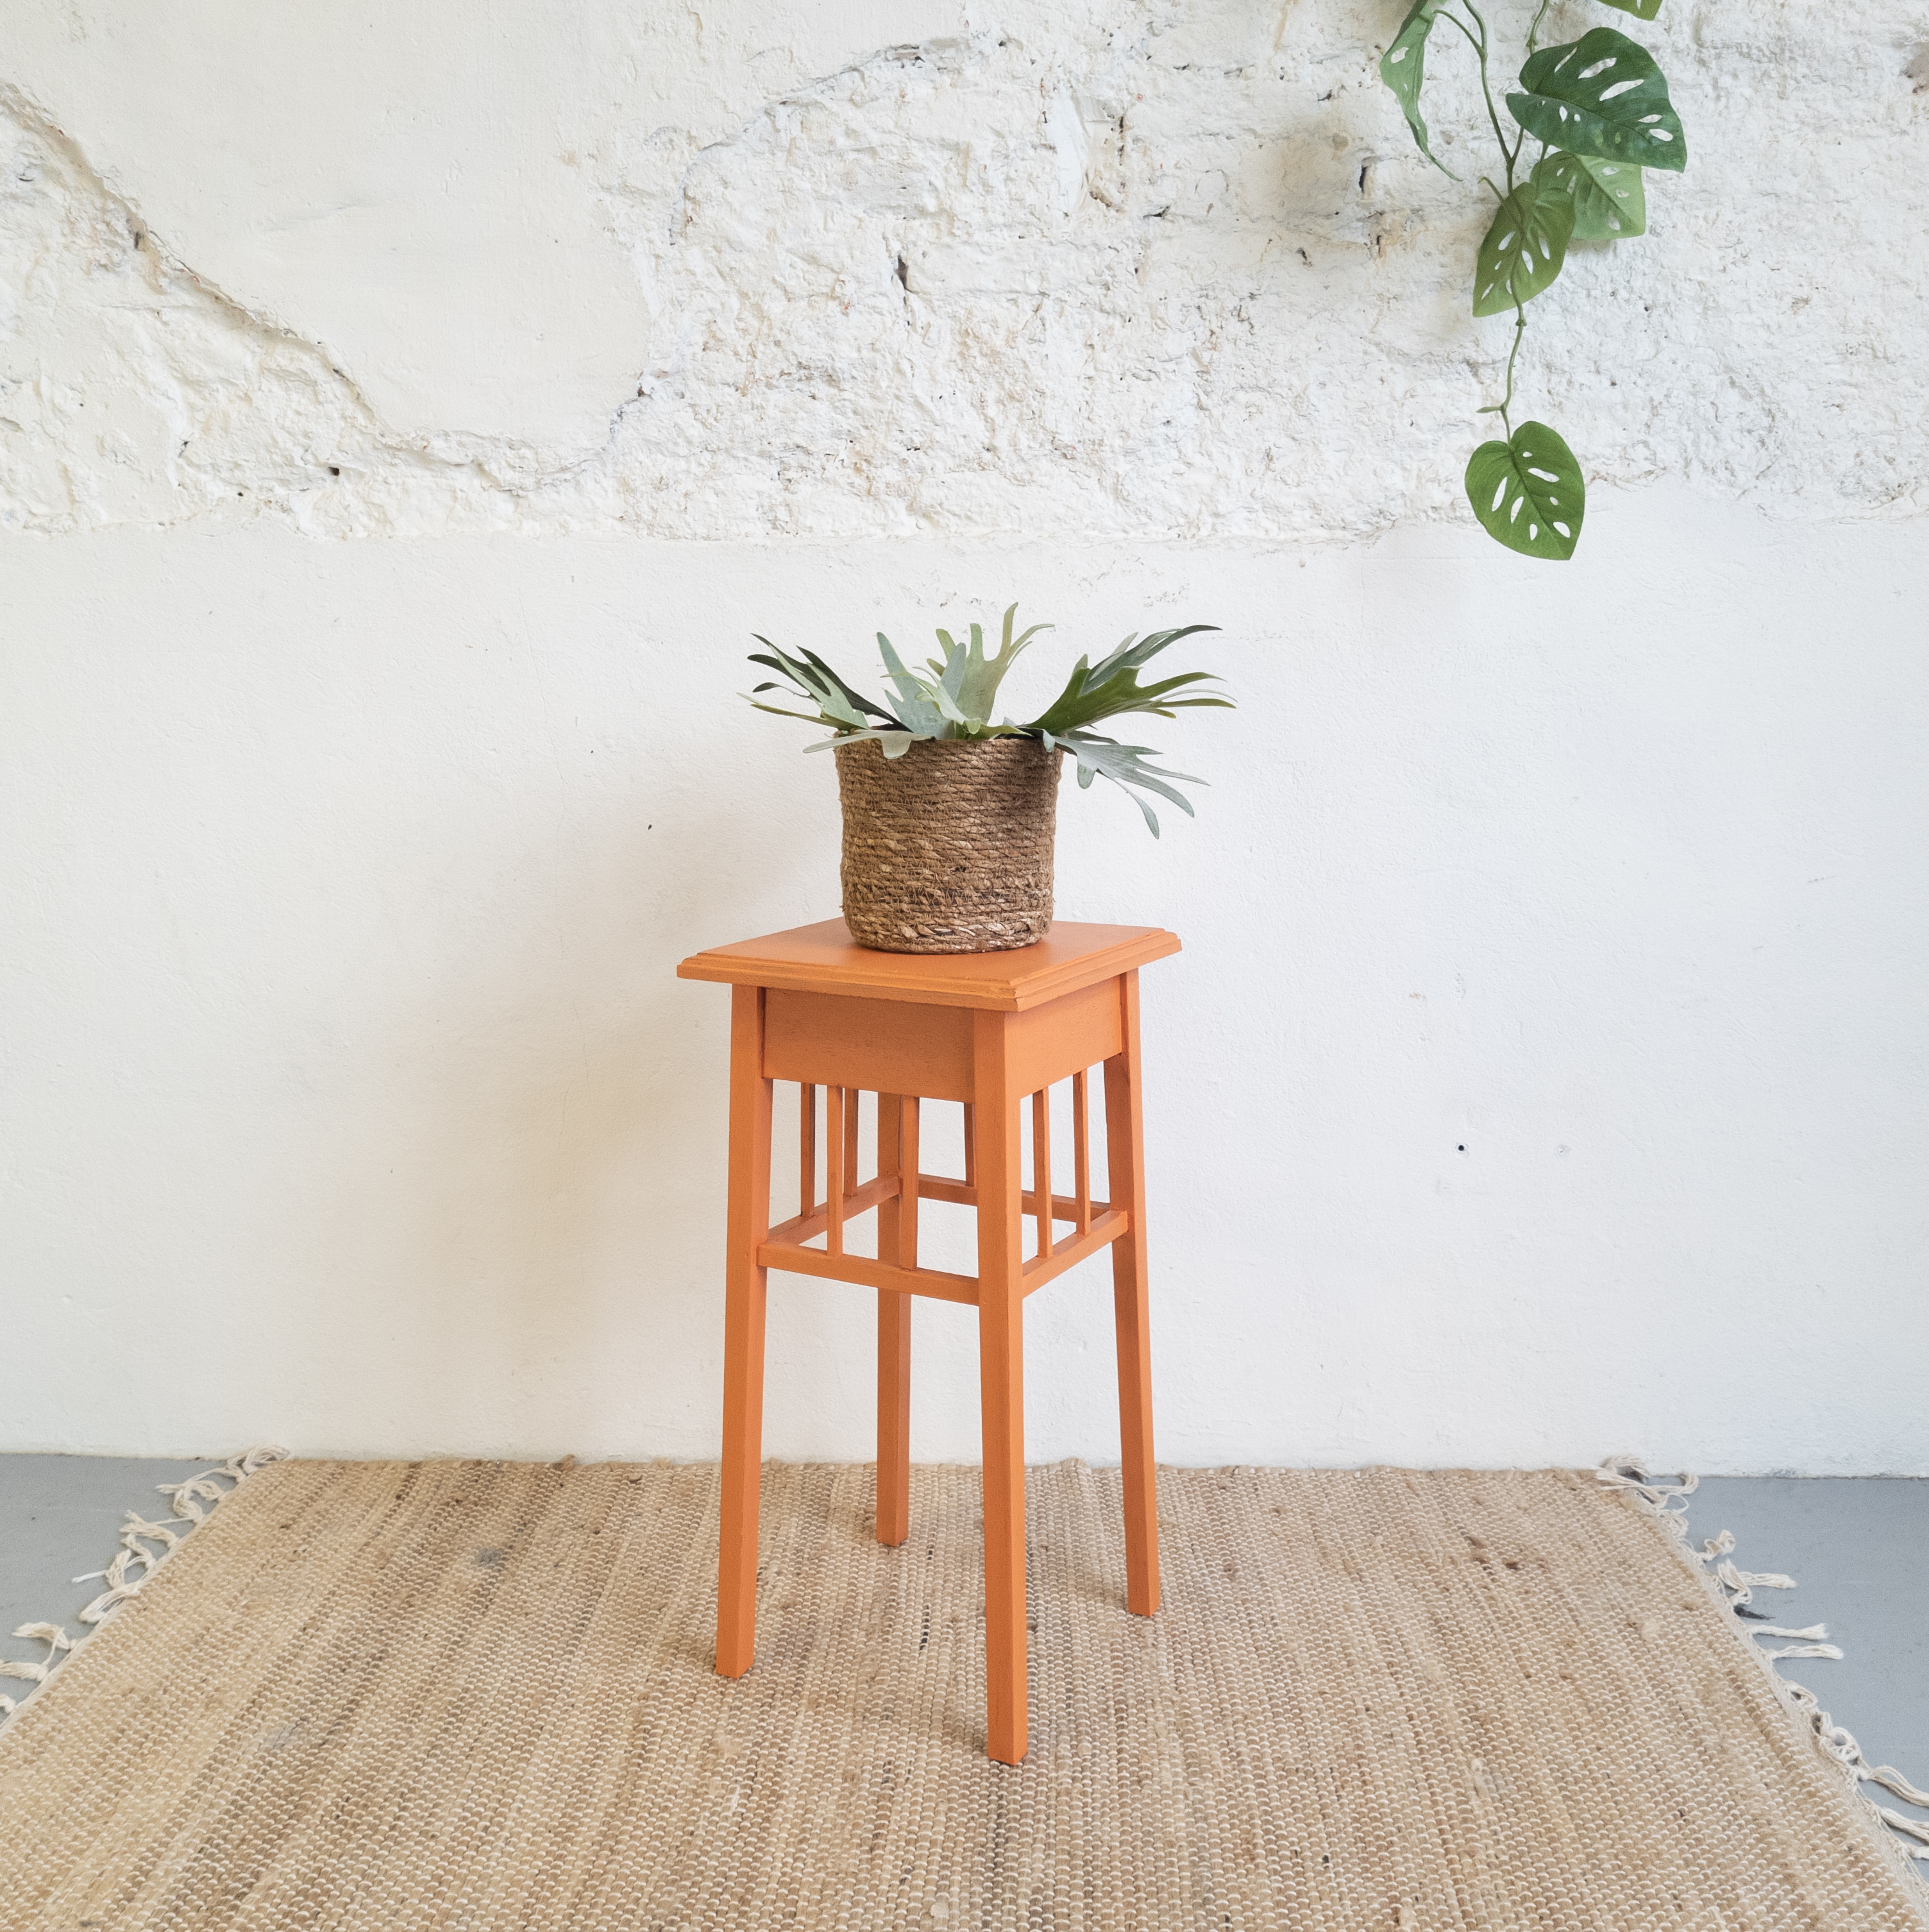 Leuke plantentafel geverfd door goed gestyled met Fusion Mineral Paint Tuscan Orange